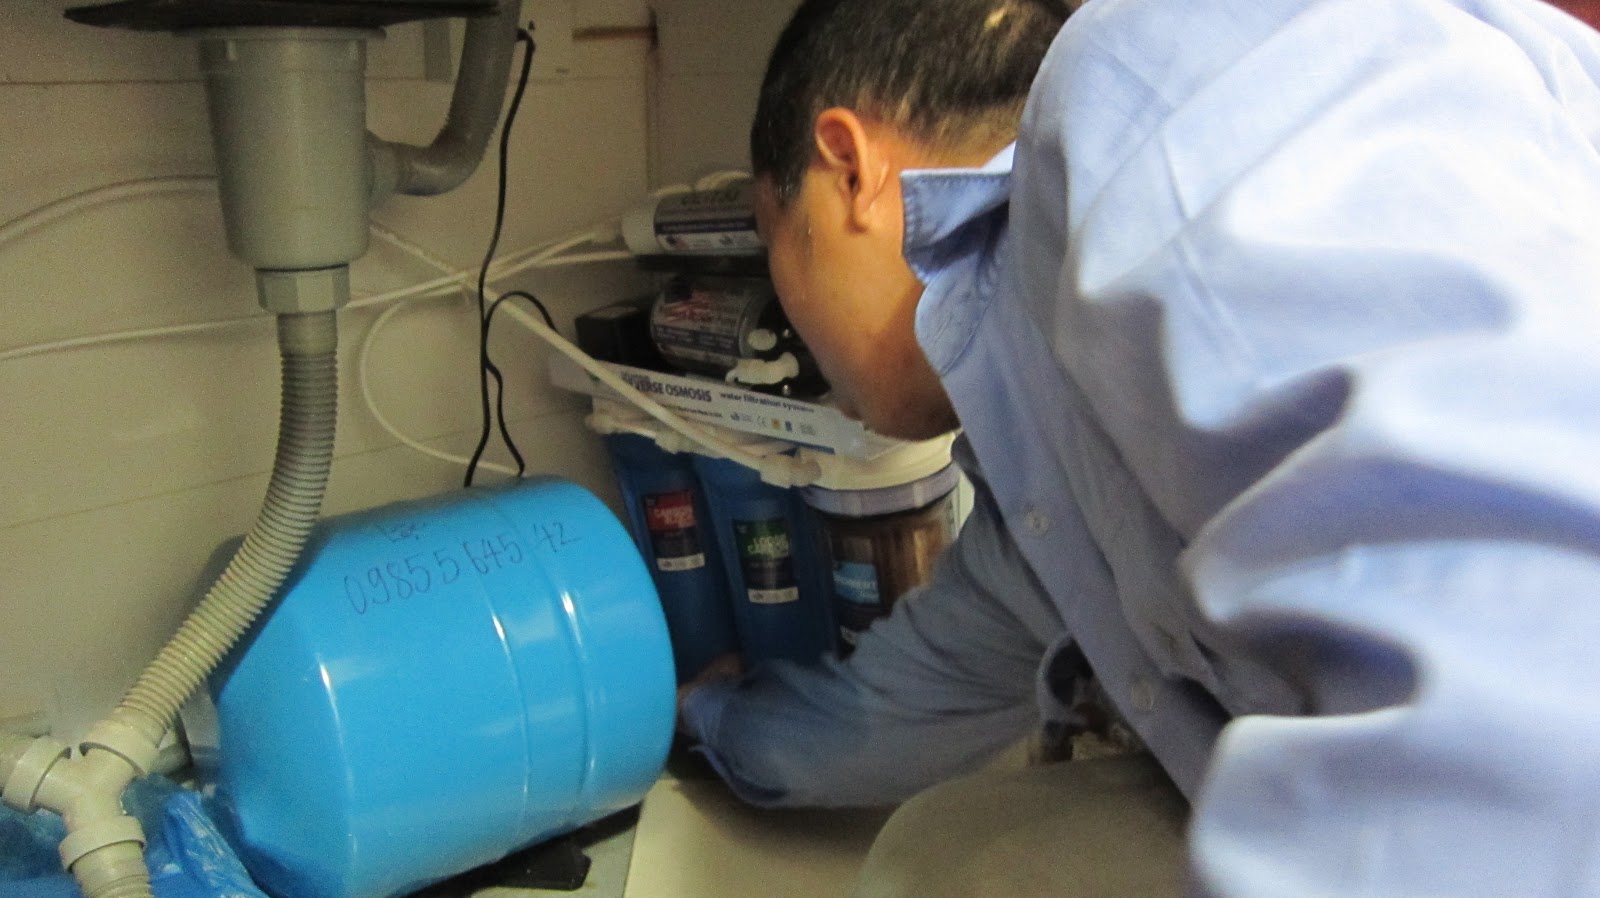 Chuyên nghiệp và đáng tin cậy: Sửa máy lọc nước tại Vinh Nghệ An với dịch vụ bảo hành đầy đủ 2